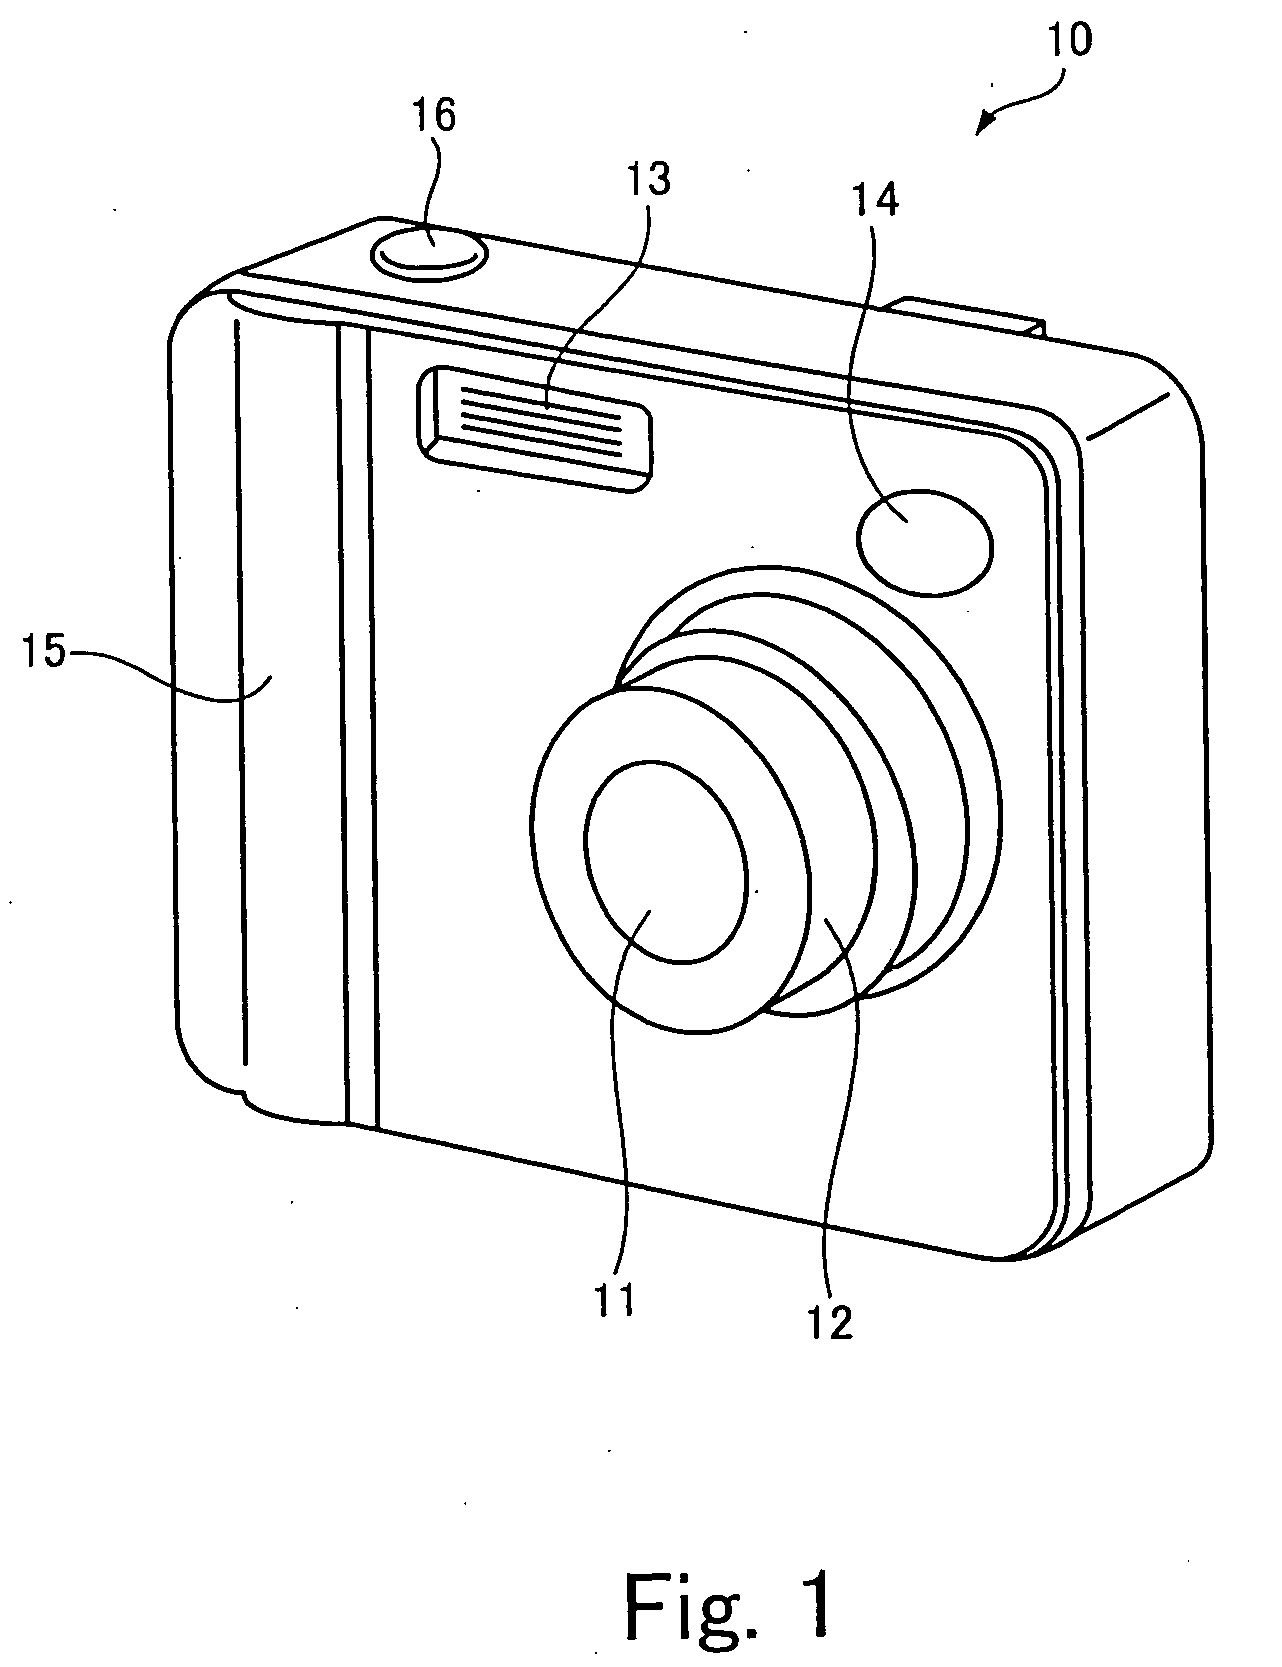 Image-taking apparatus